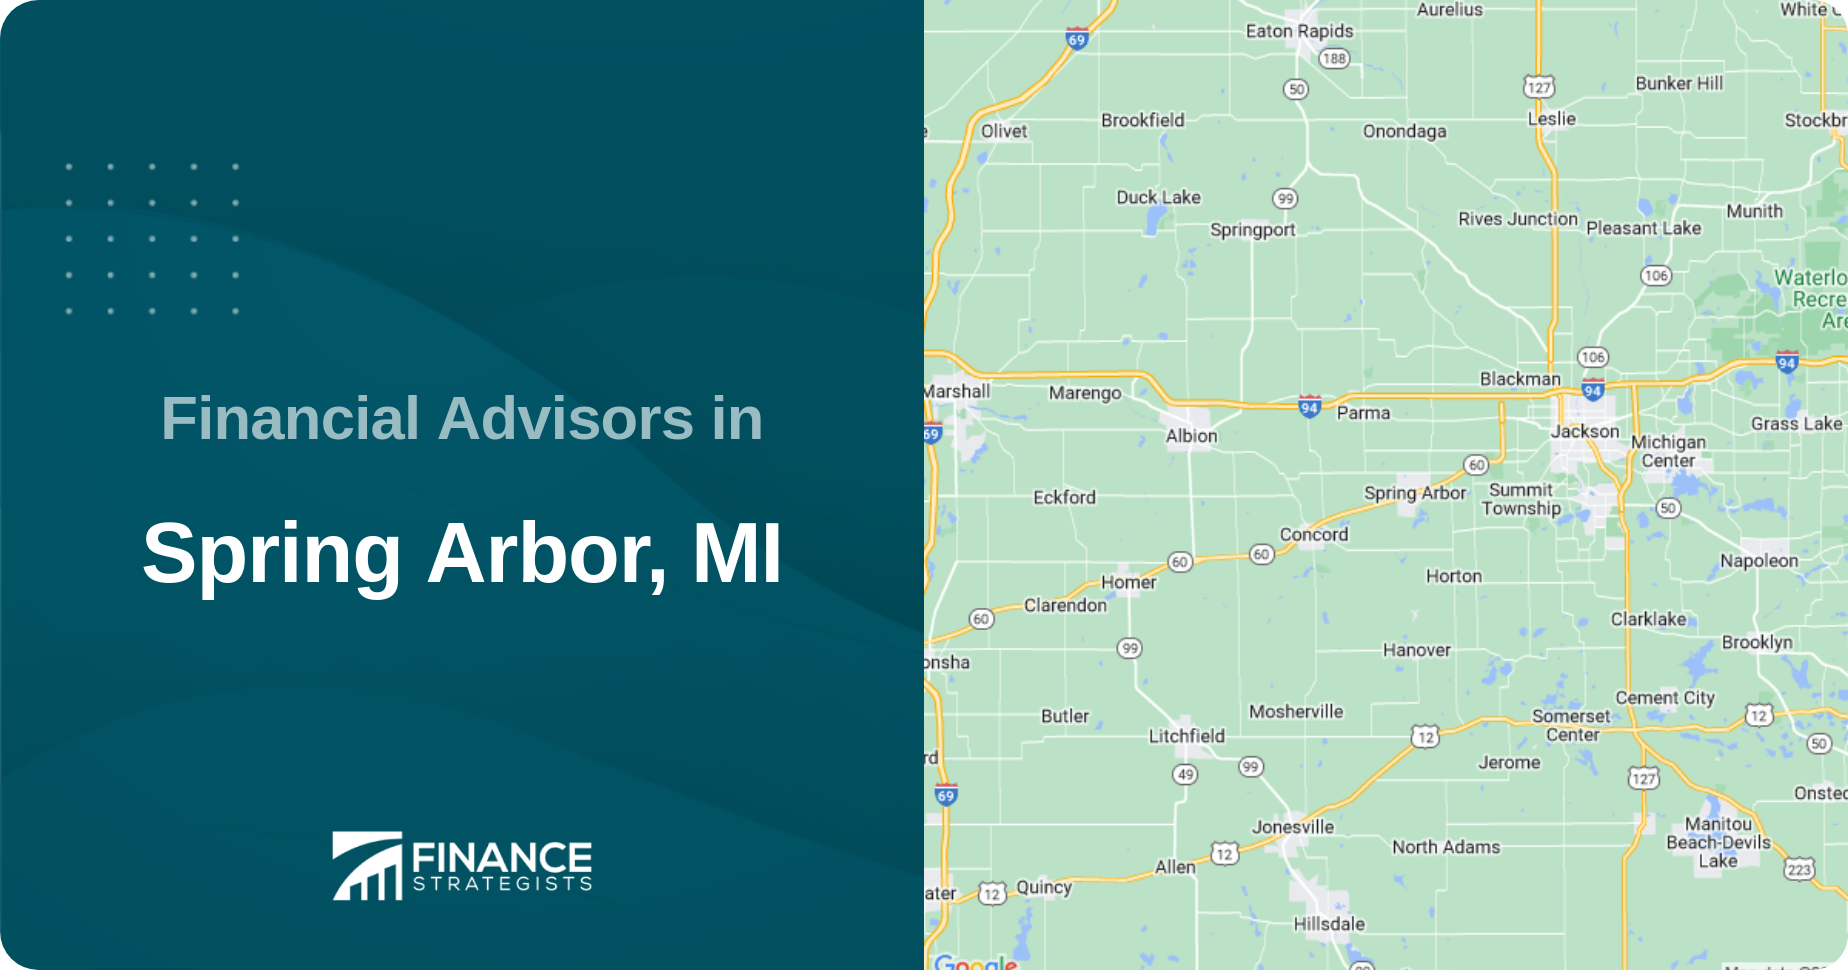 Financial Advisors in Spring Arbor, MI